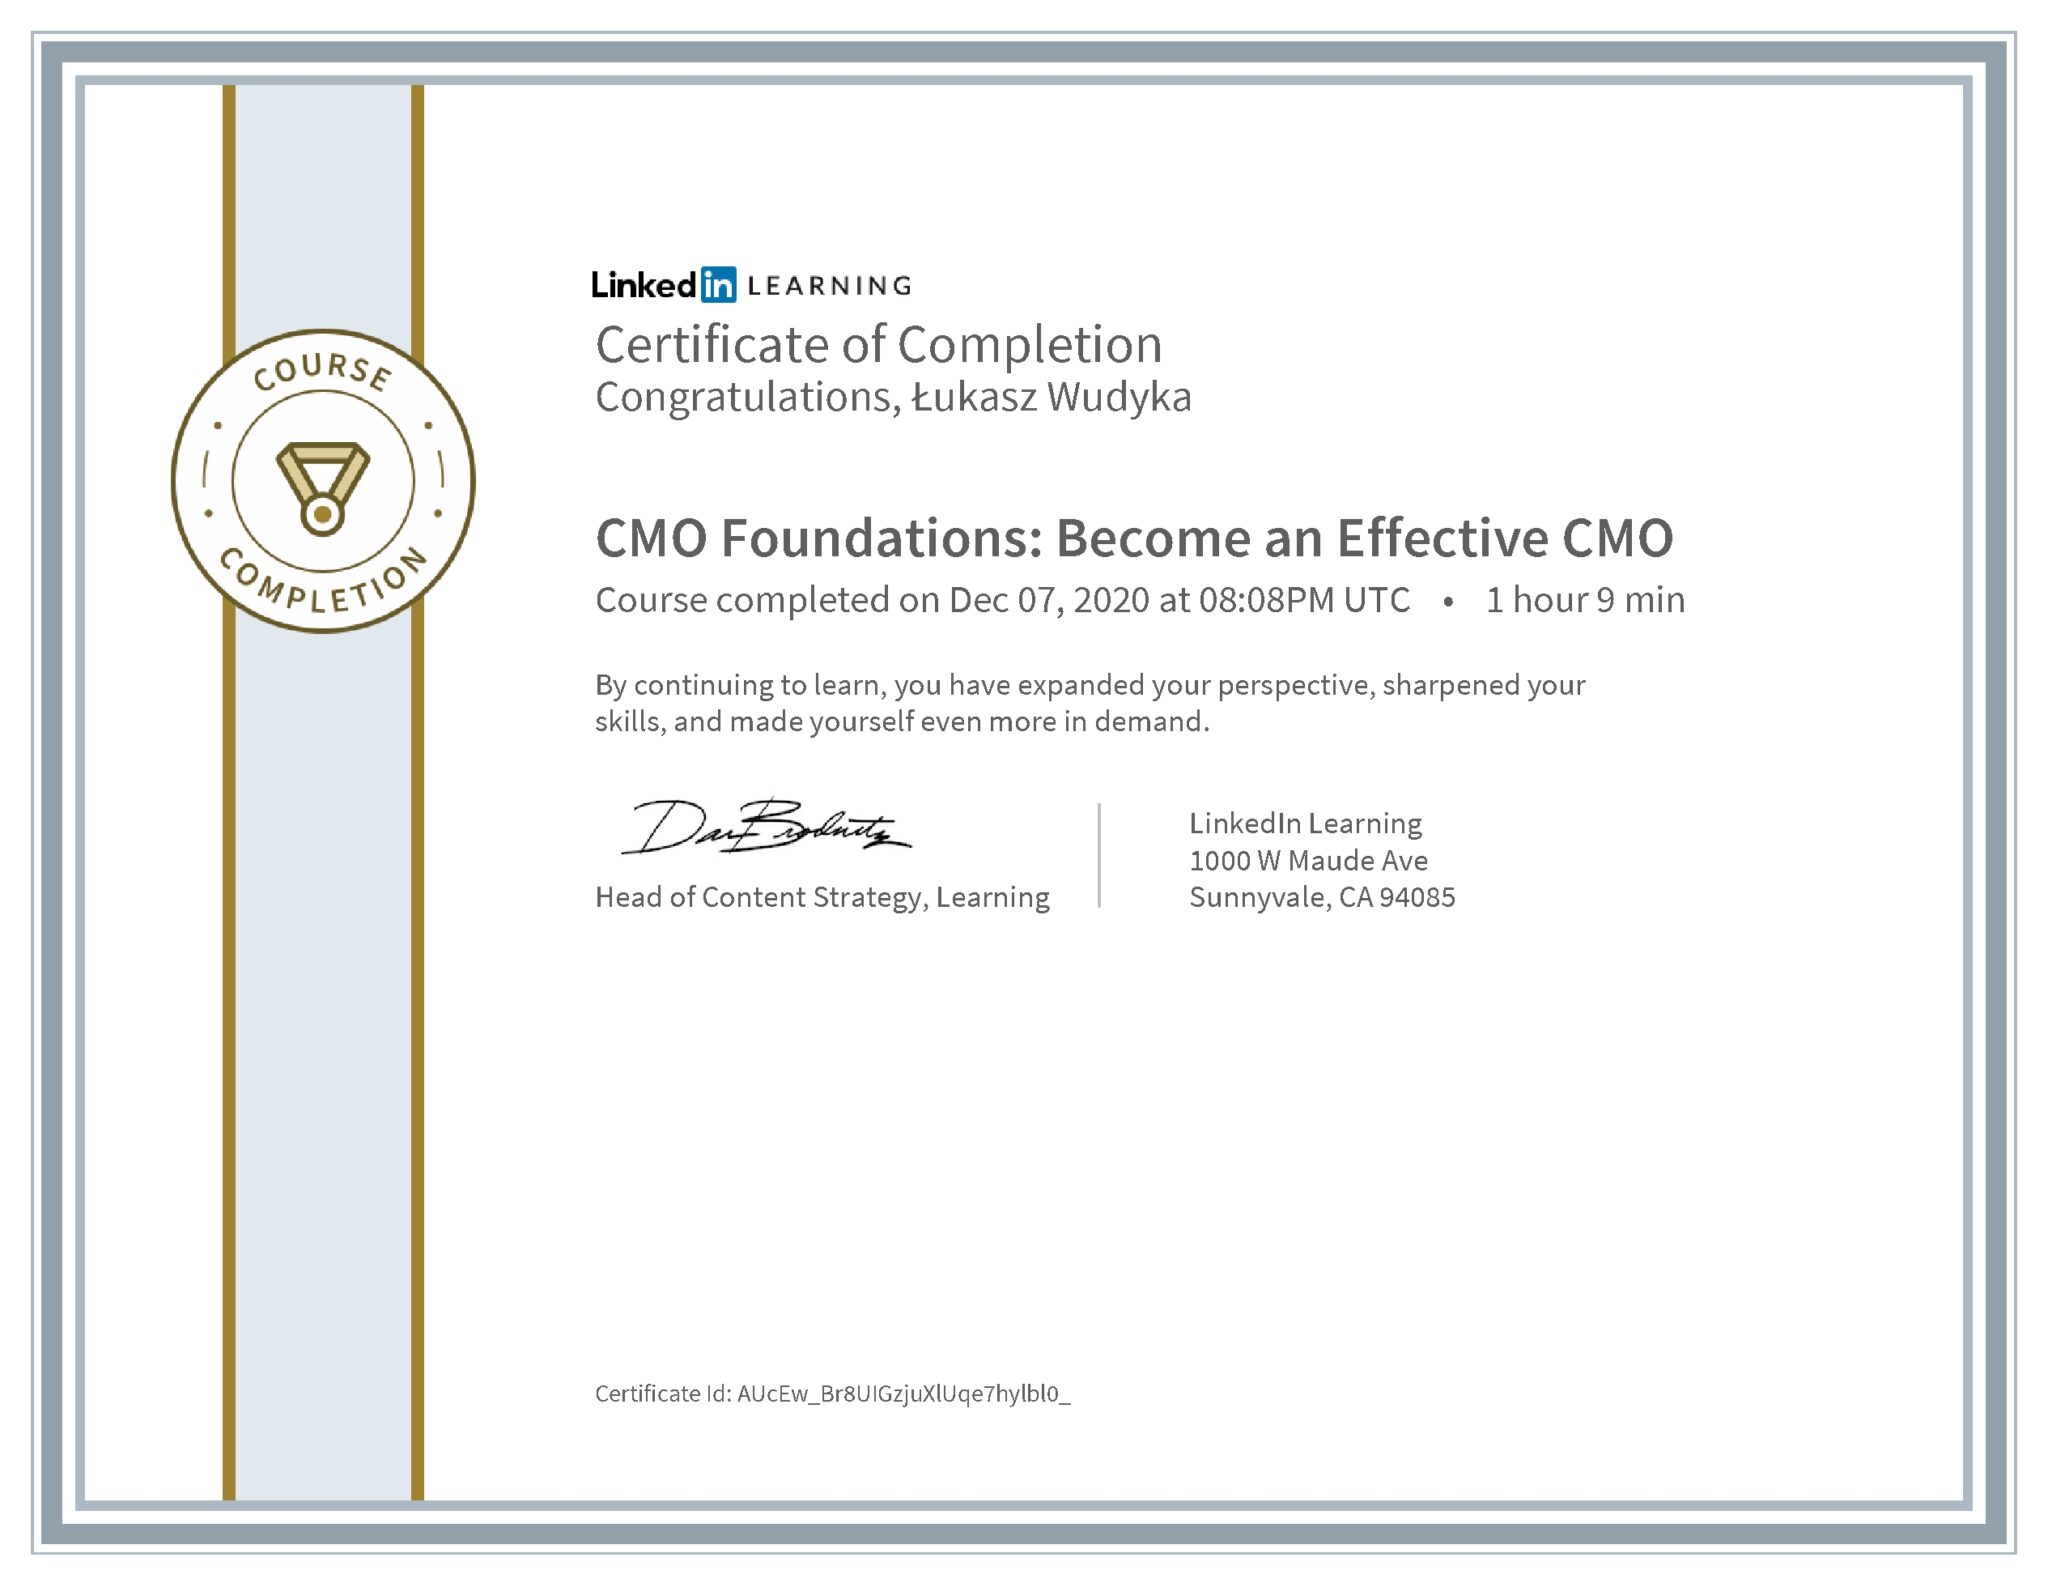 Łukasz Wudyka certyfikat LinkedIn CMO Foundations: Become an Effective CMO